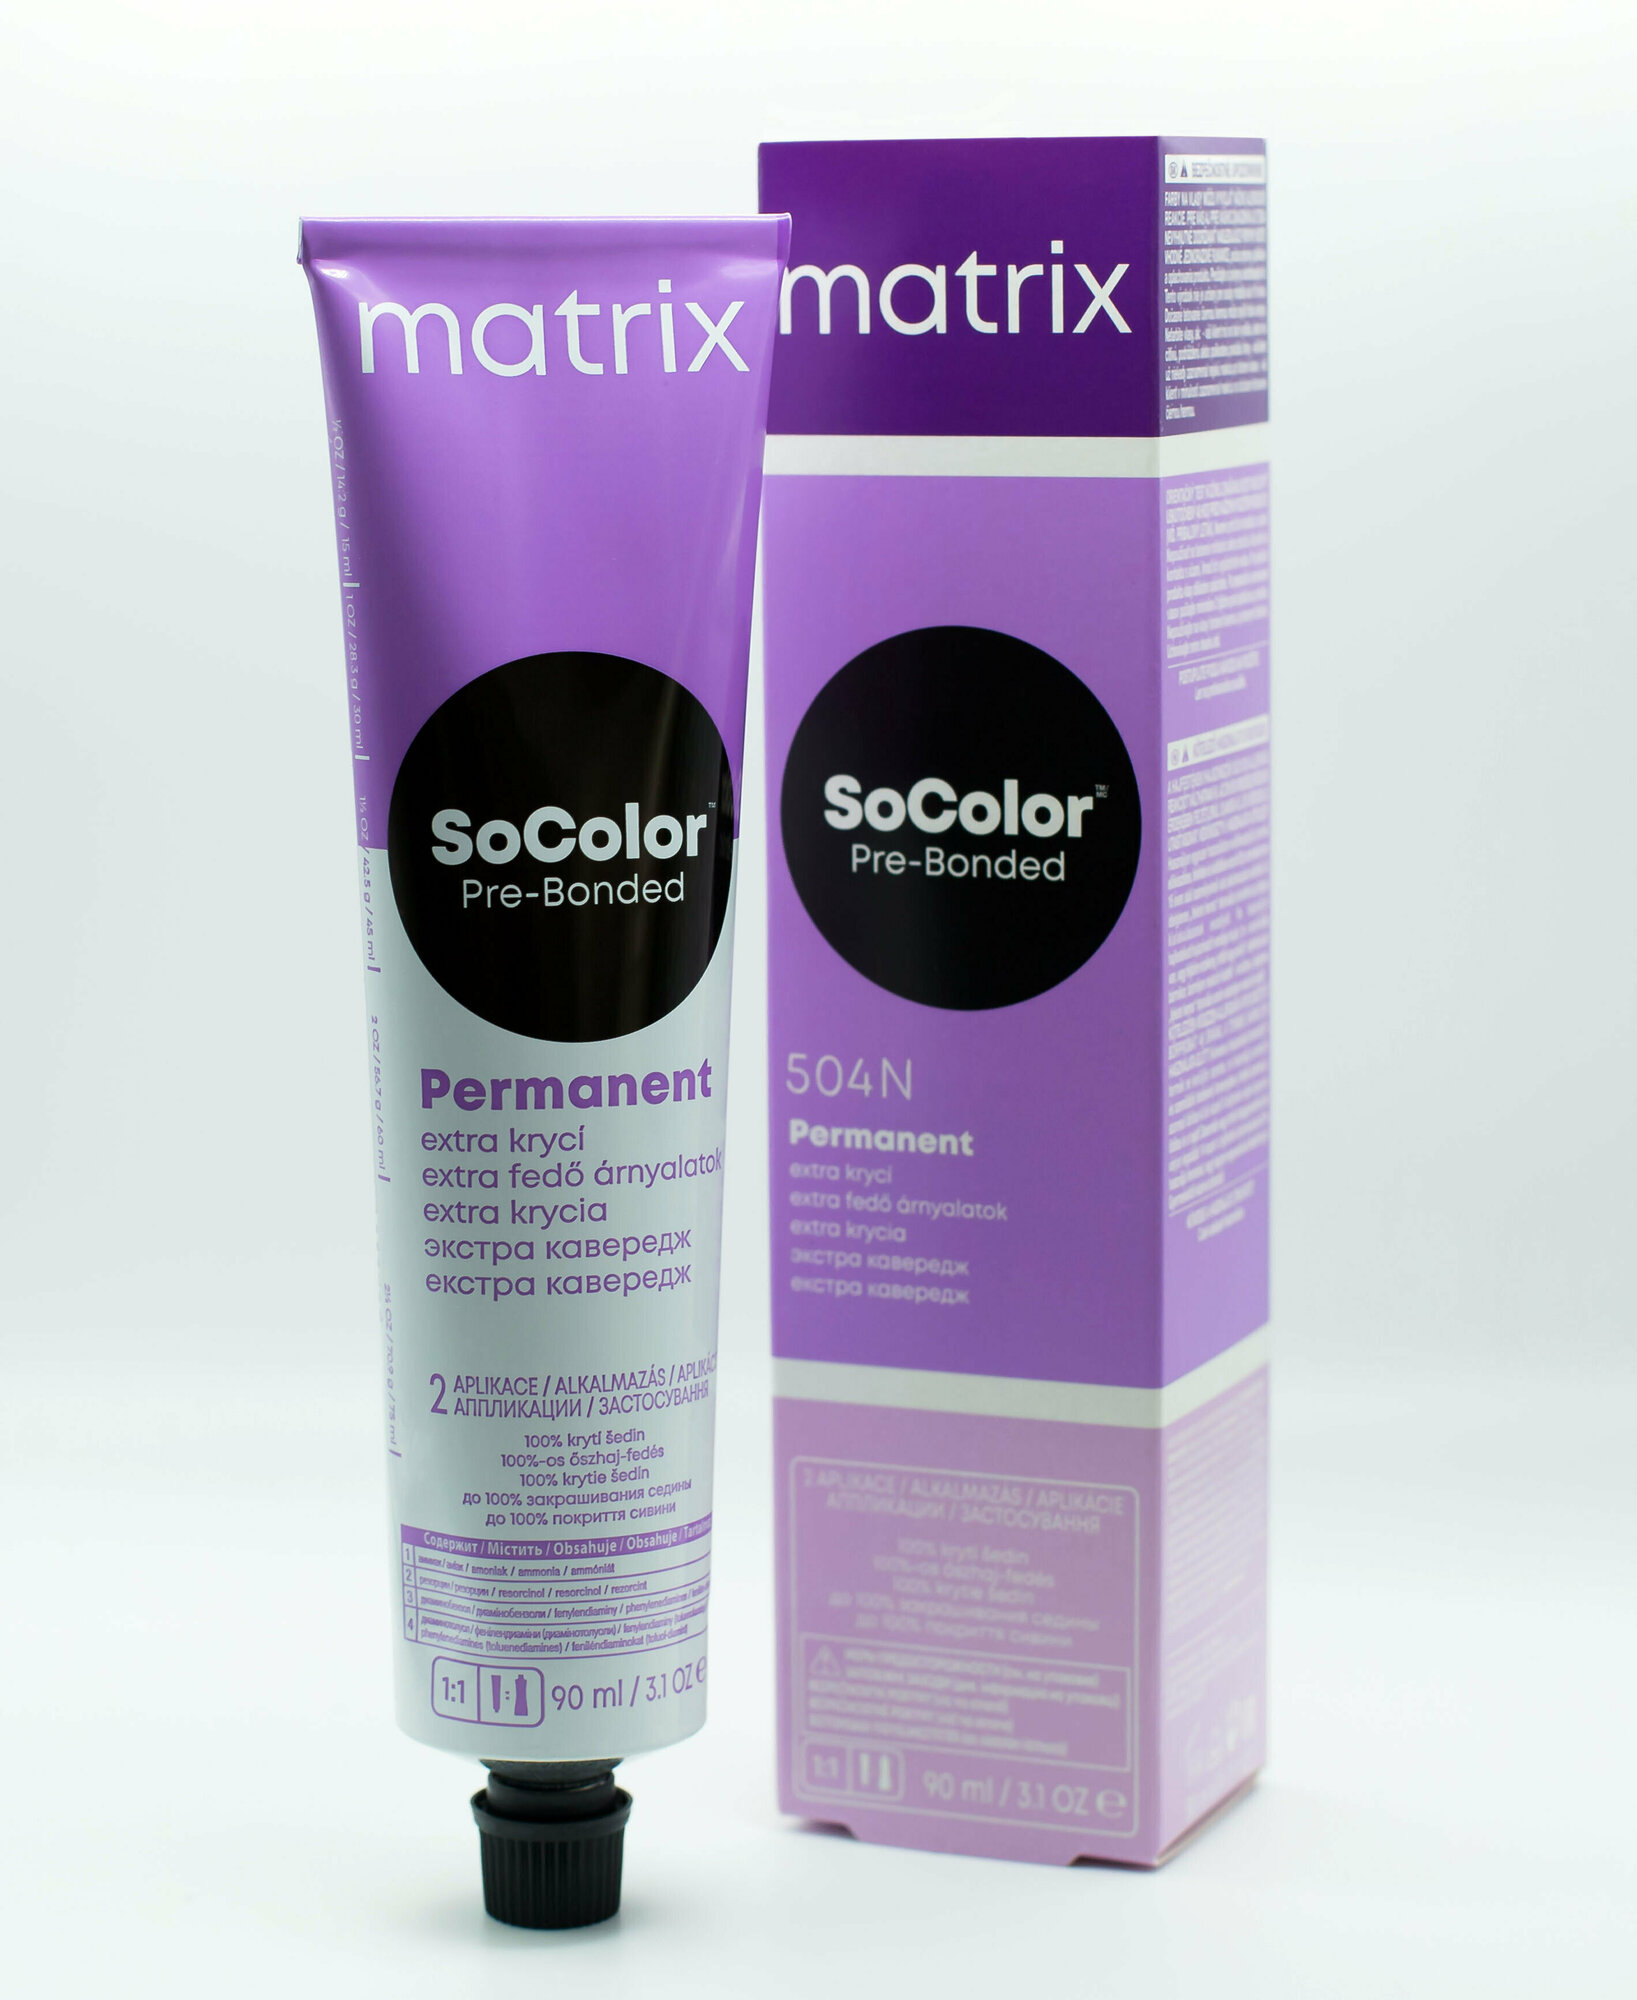 Matrix SoColor Pre-bonded стойкая крем-краска для седых волос Extra coverage, 508Na светлый блондин натуральный пепельный, 90 мл